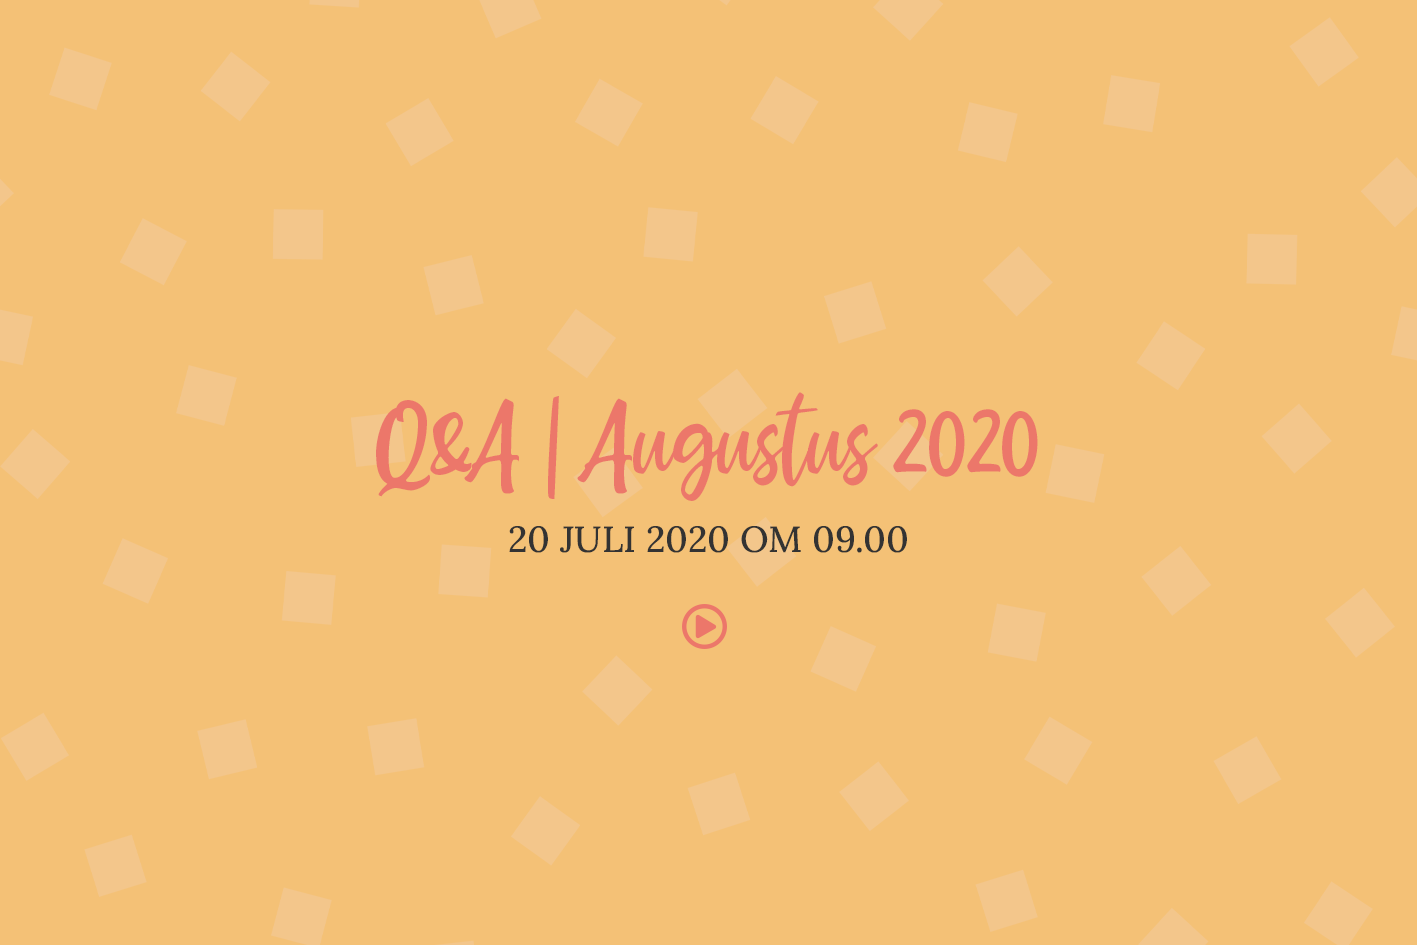 Q&A augustus 2020